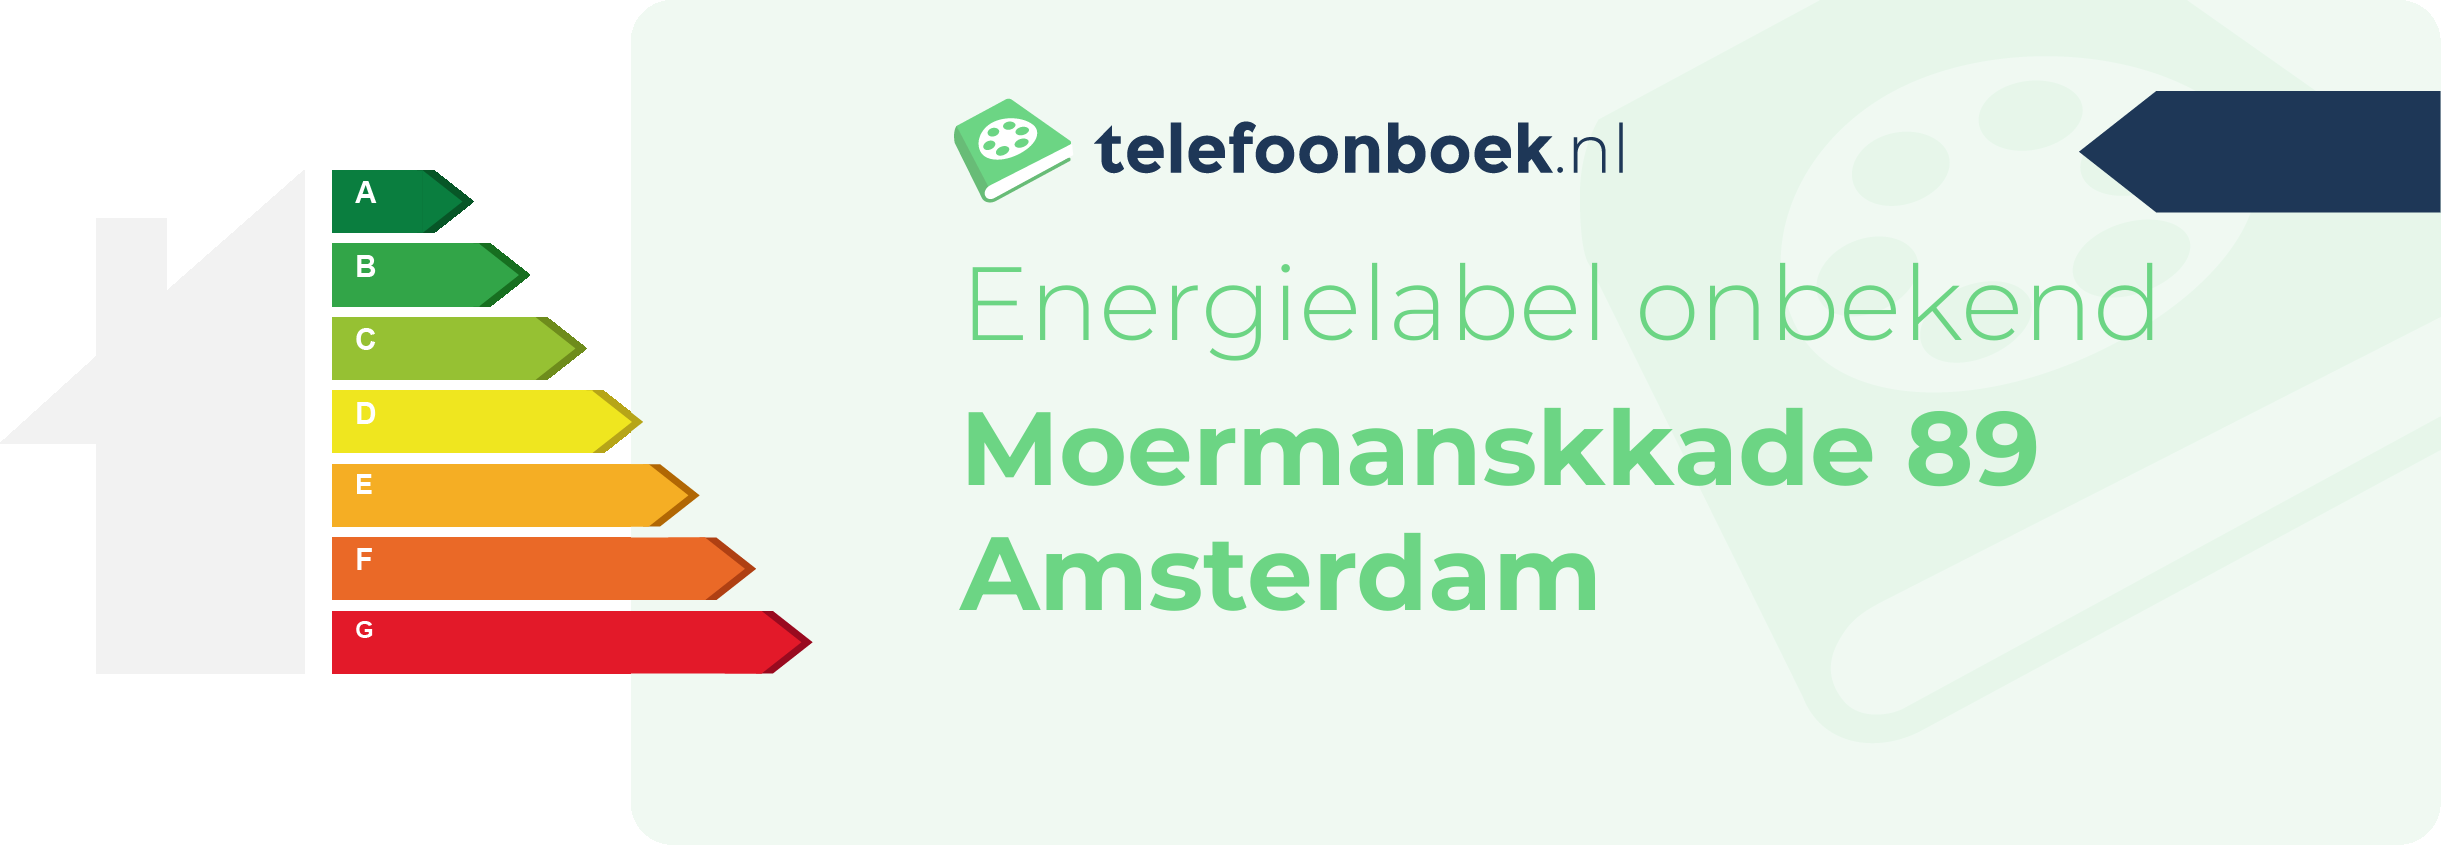 Energielabel Moermanskkade 89 Amsterdam